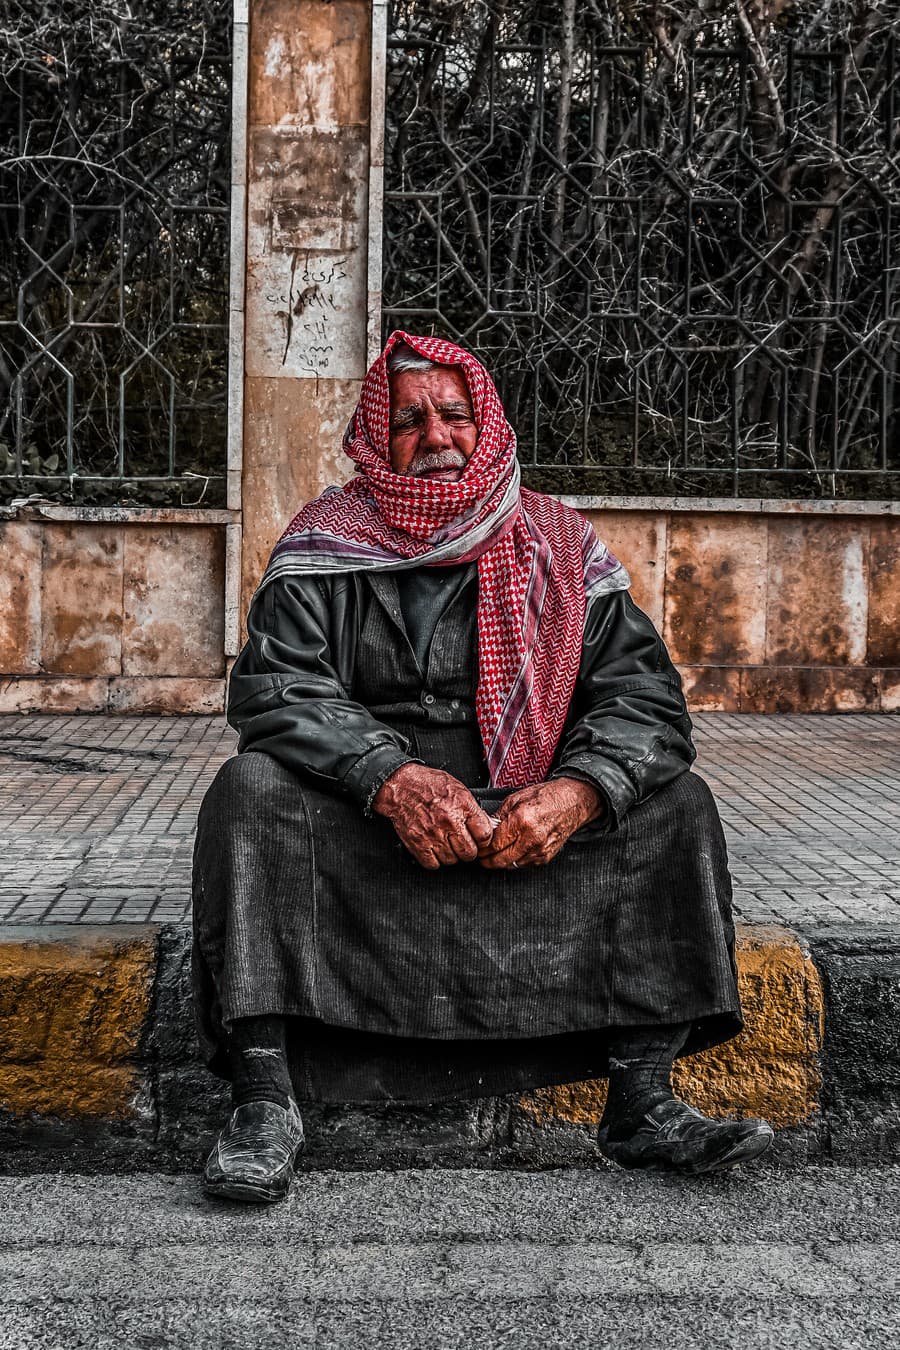 FOTOREPORTÁŽ zo Sýrie: Šťastie